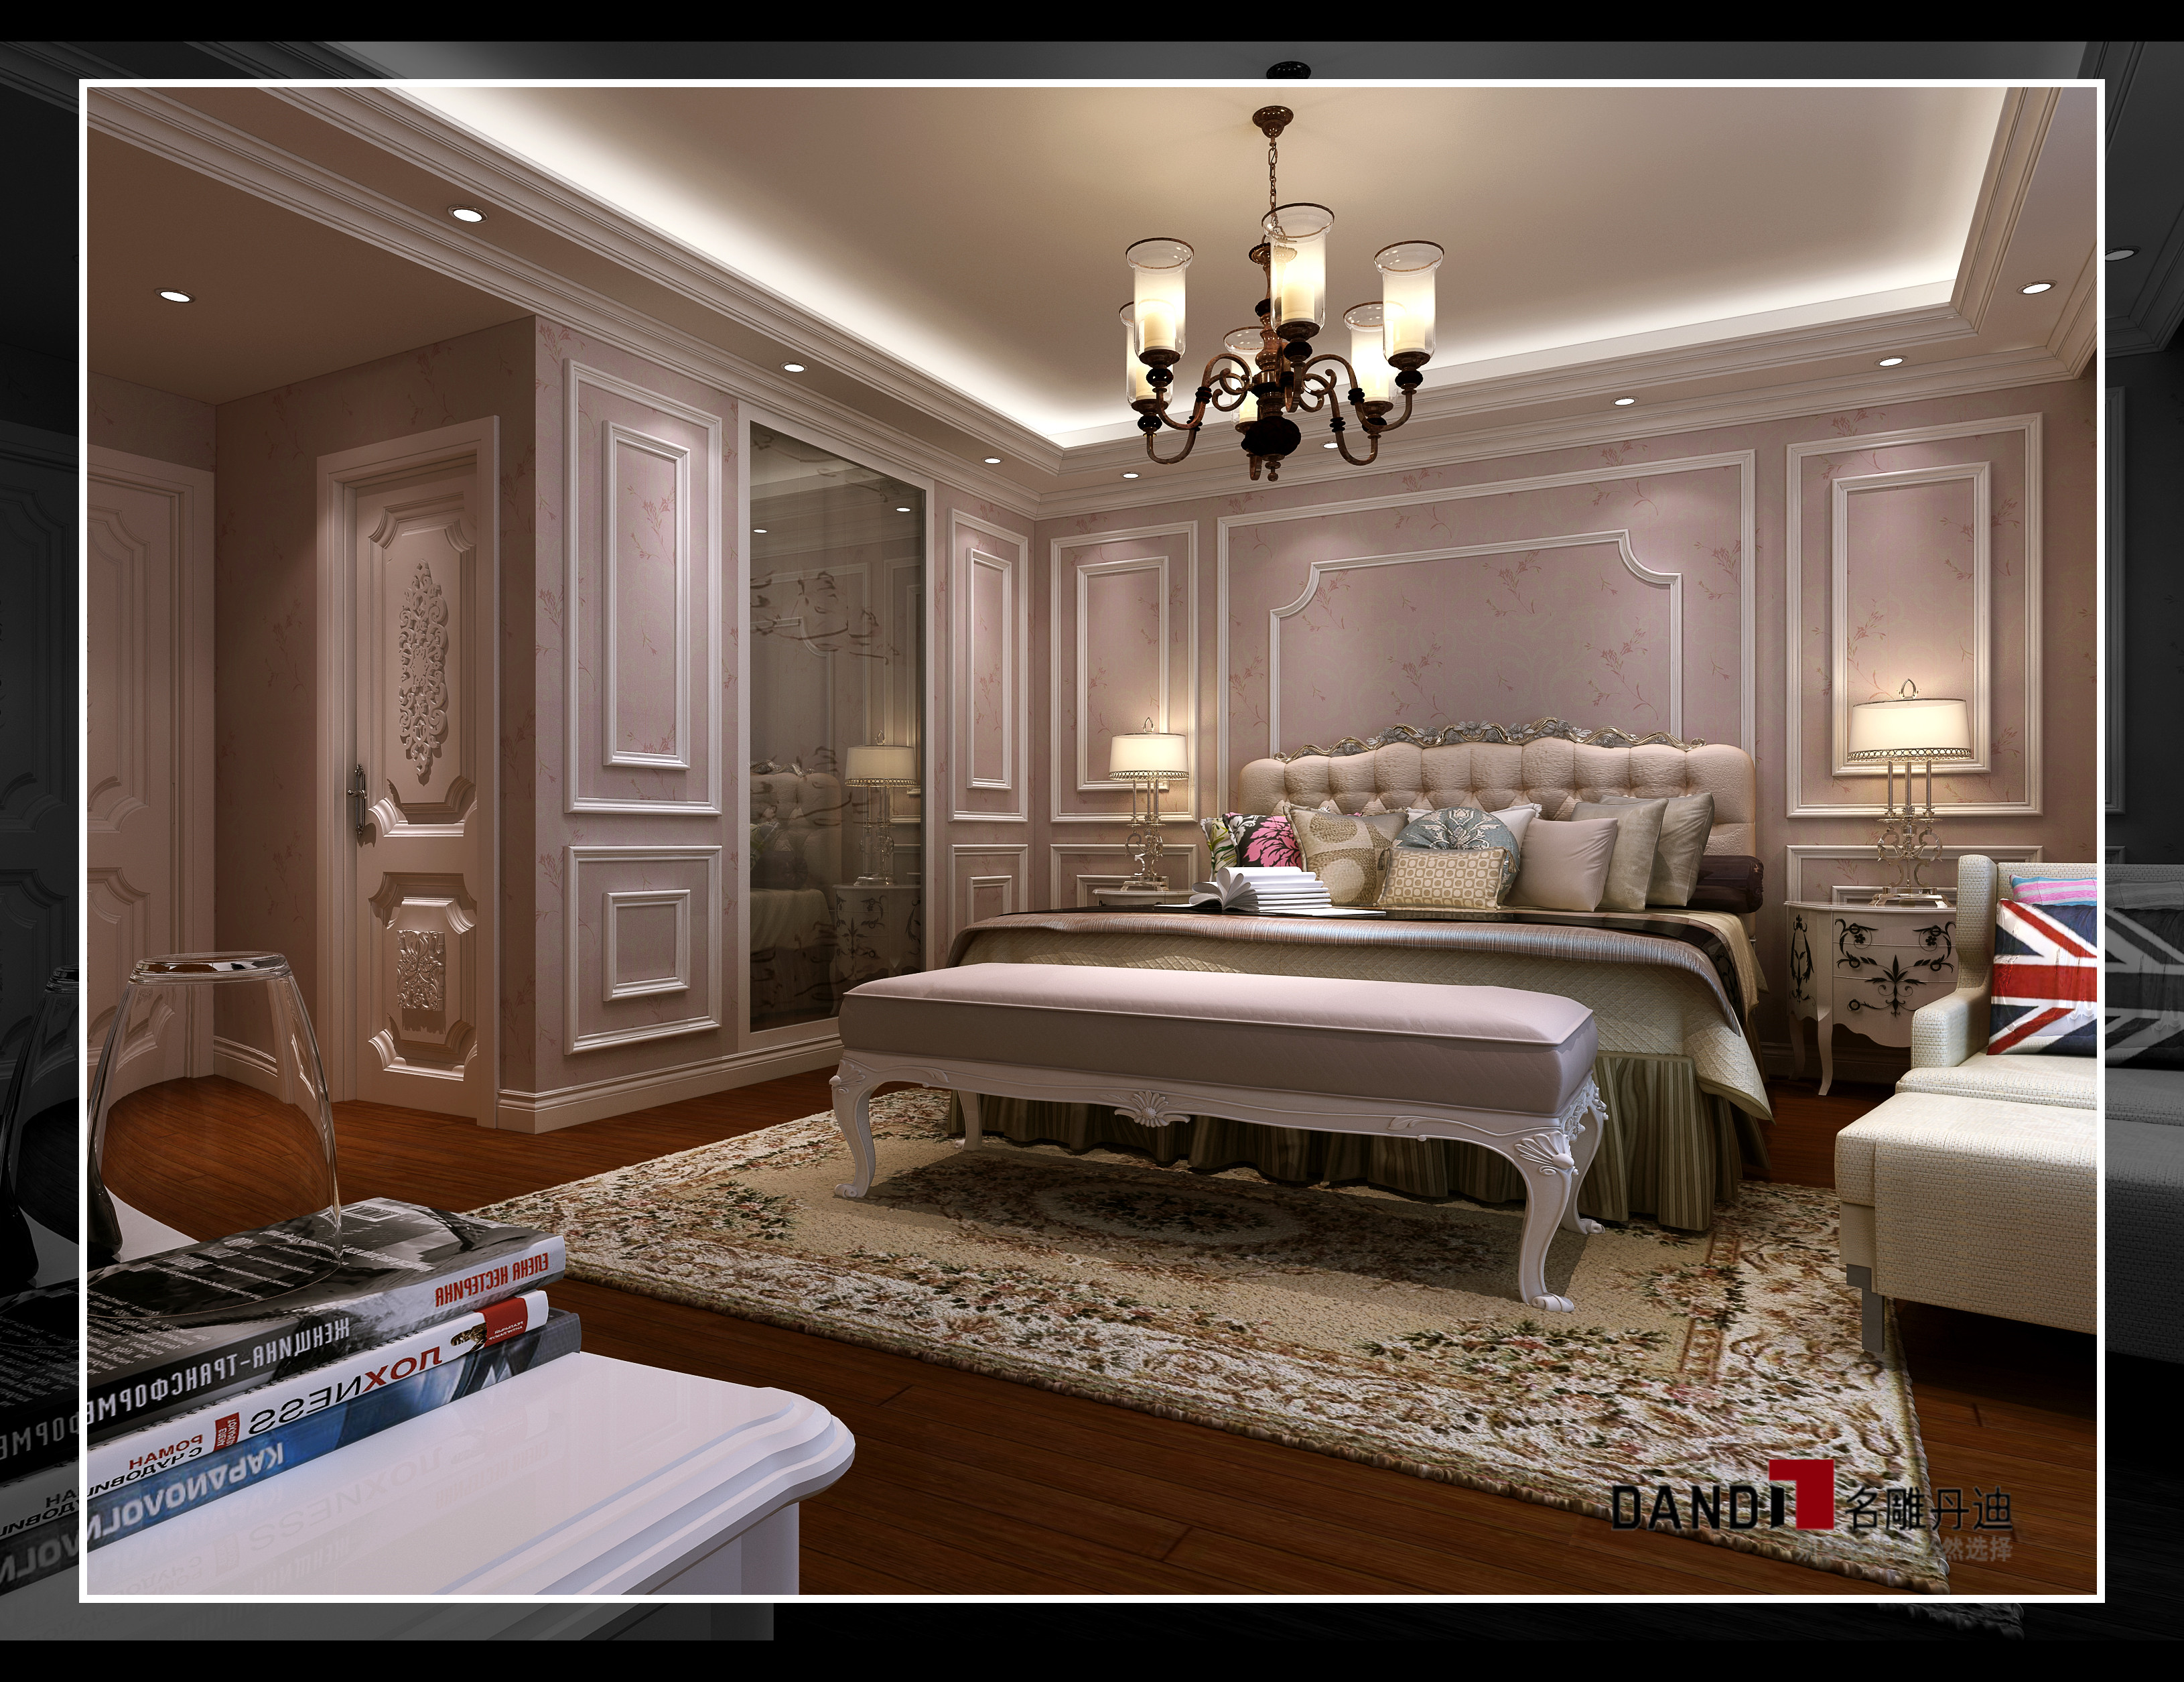 欧式 别墅 完美的典线 细节处理 舒适触感 文化情趣 尊贵与典雅 审美高度 卧室图片来自名雕丹迪在纯水岸欧式别墅的分享